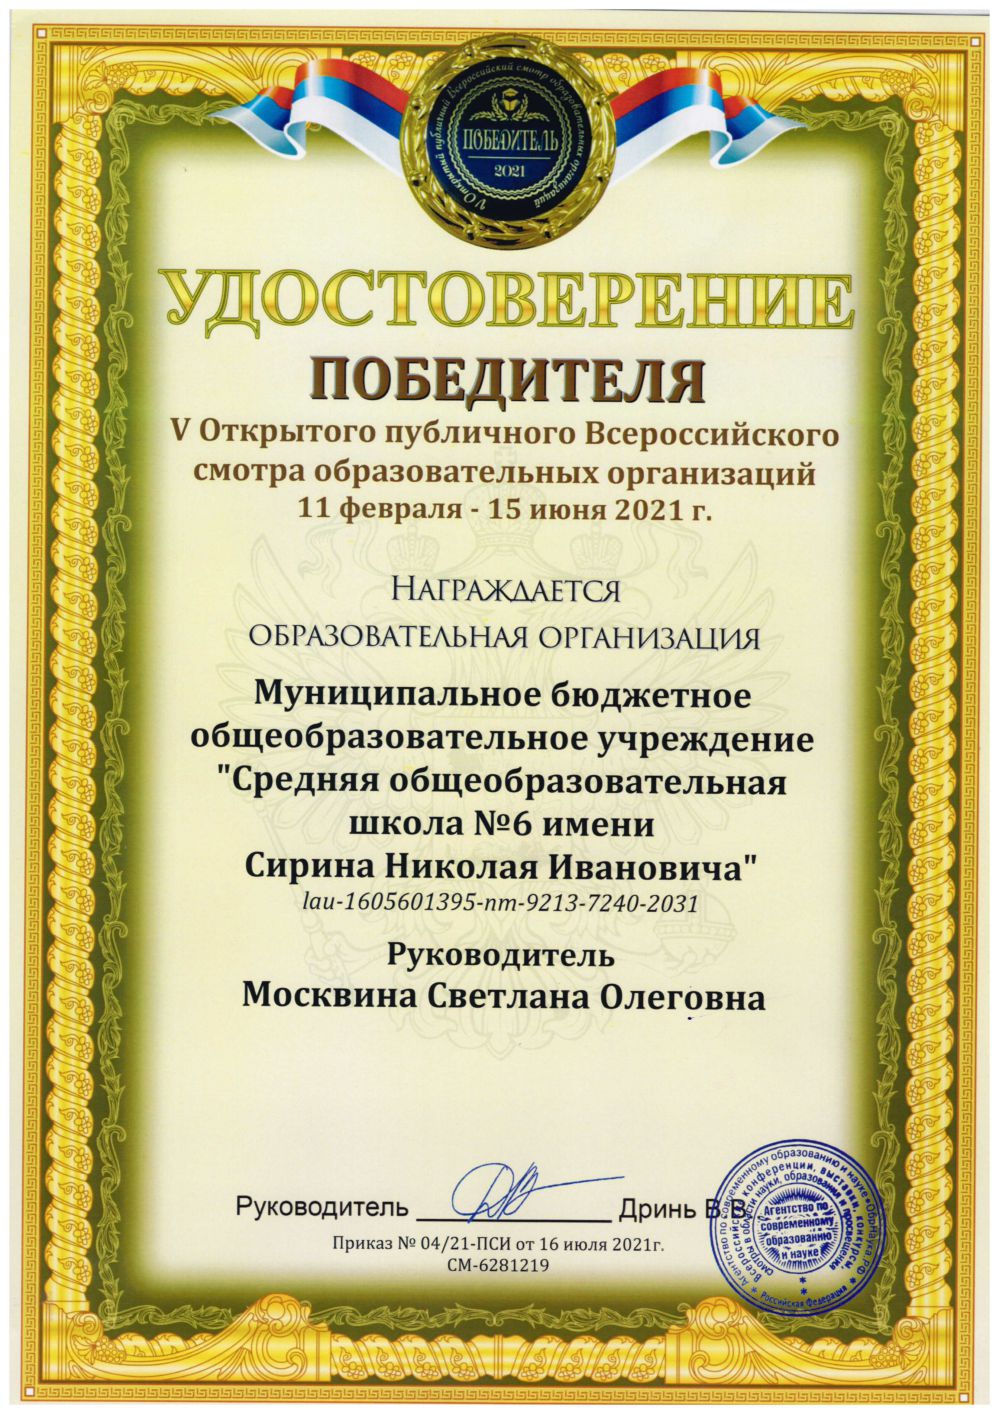 Диплом победителя Всероссийского смотра образовательных организаций, 2021